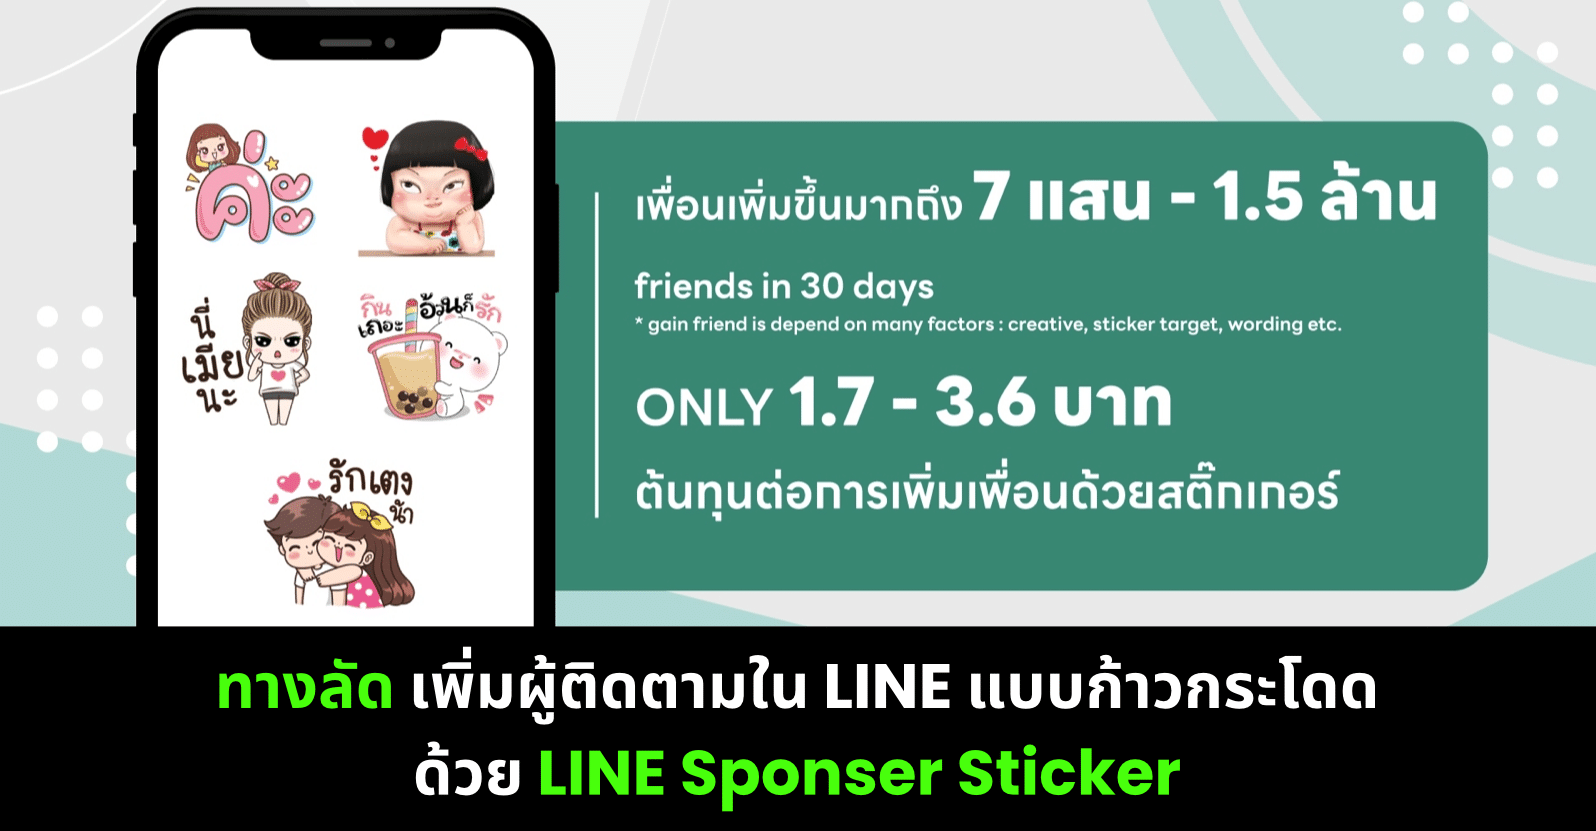 ทางลัด เพิ่มผู้ติดตามใน LINE แบบก้าวกระโดดด้วย LINE Sponser Sticker